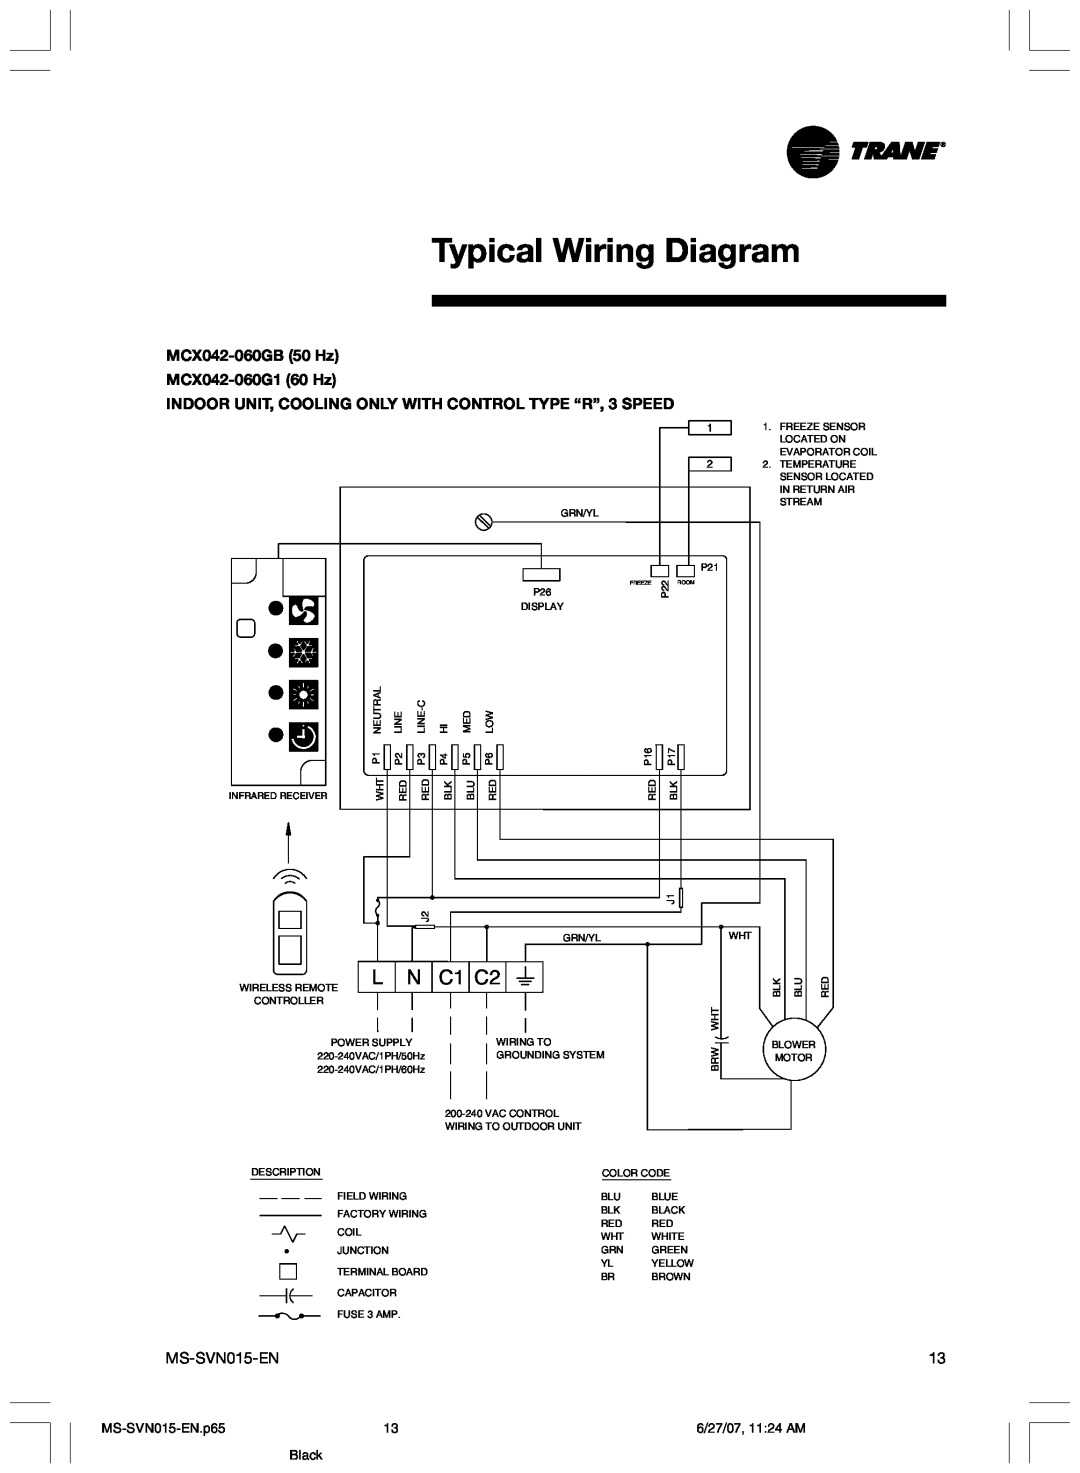 Trane Typical Wiring Diagram, C1 C2, MCX042-060GB50 Hz MCX042-060G160 Hz, MS-SVN015-EN.p65, 6/27/07, 11 24 AM, Black 